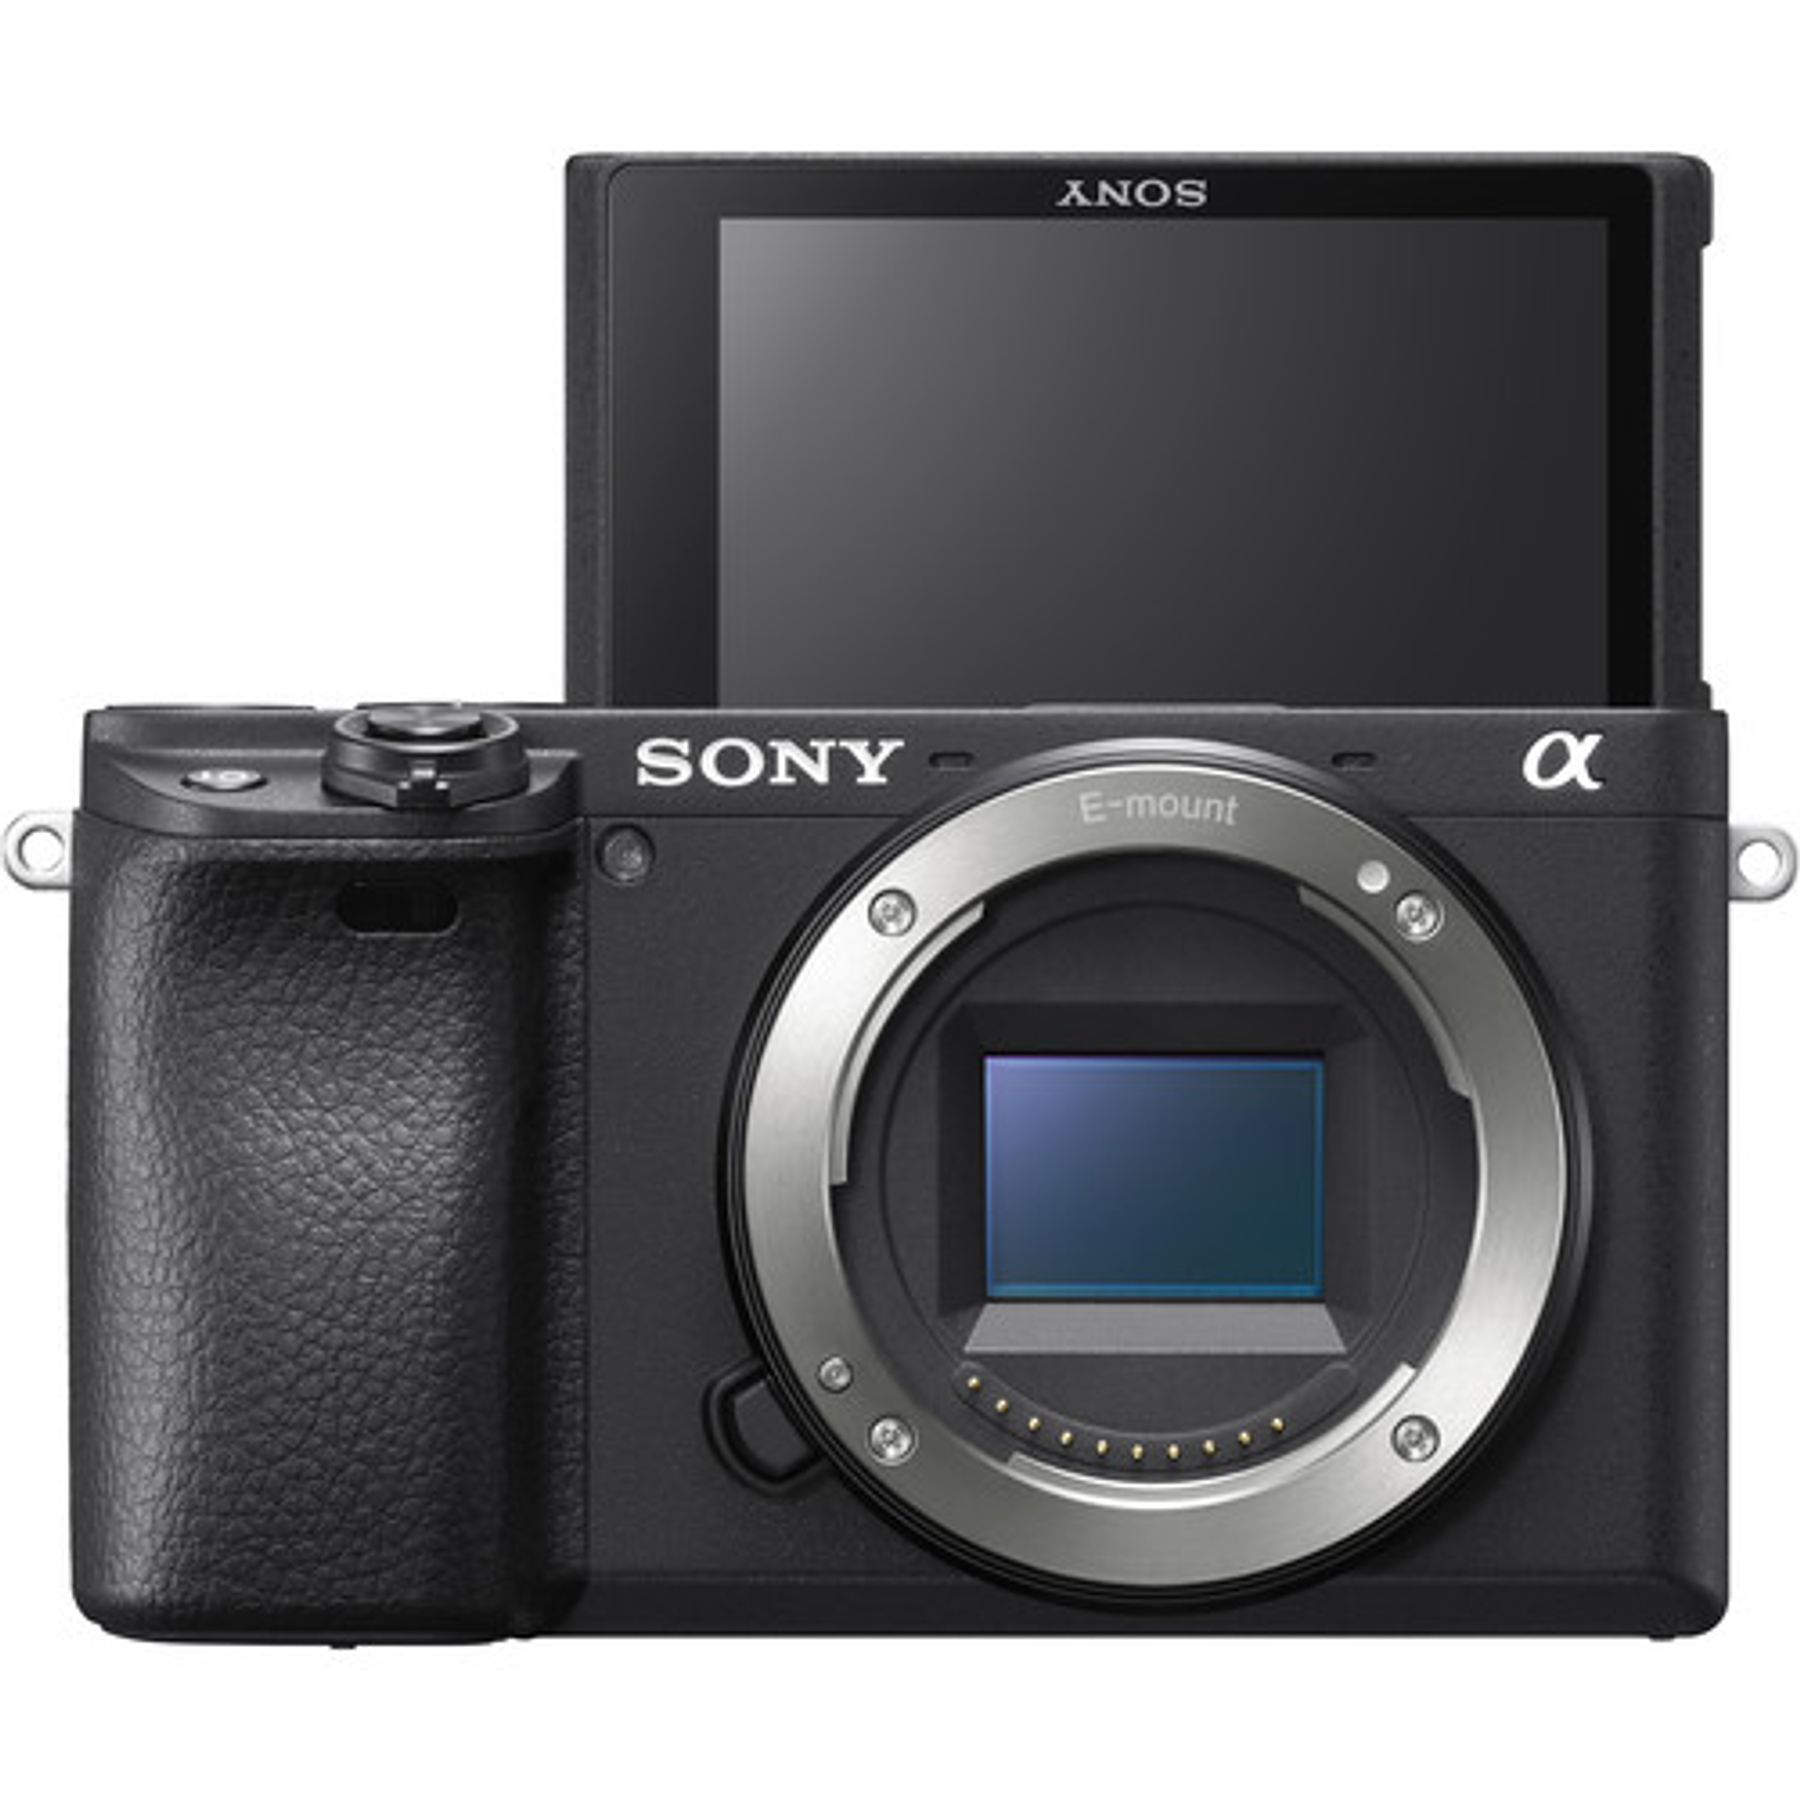 Sony A9, una cámara profesional para frenar a Canon y Nikon